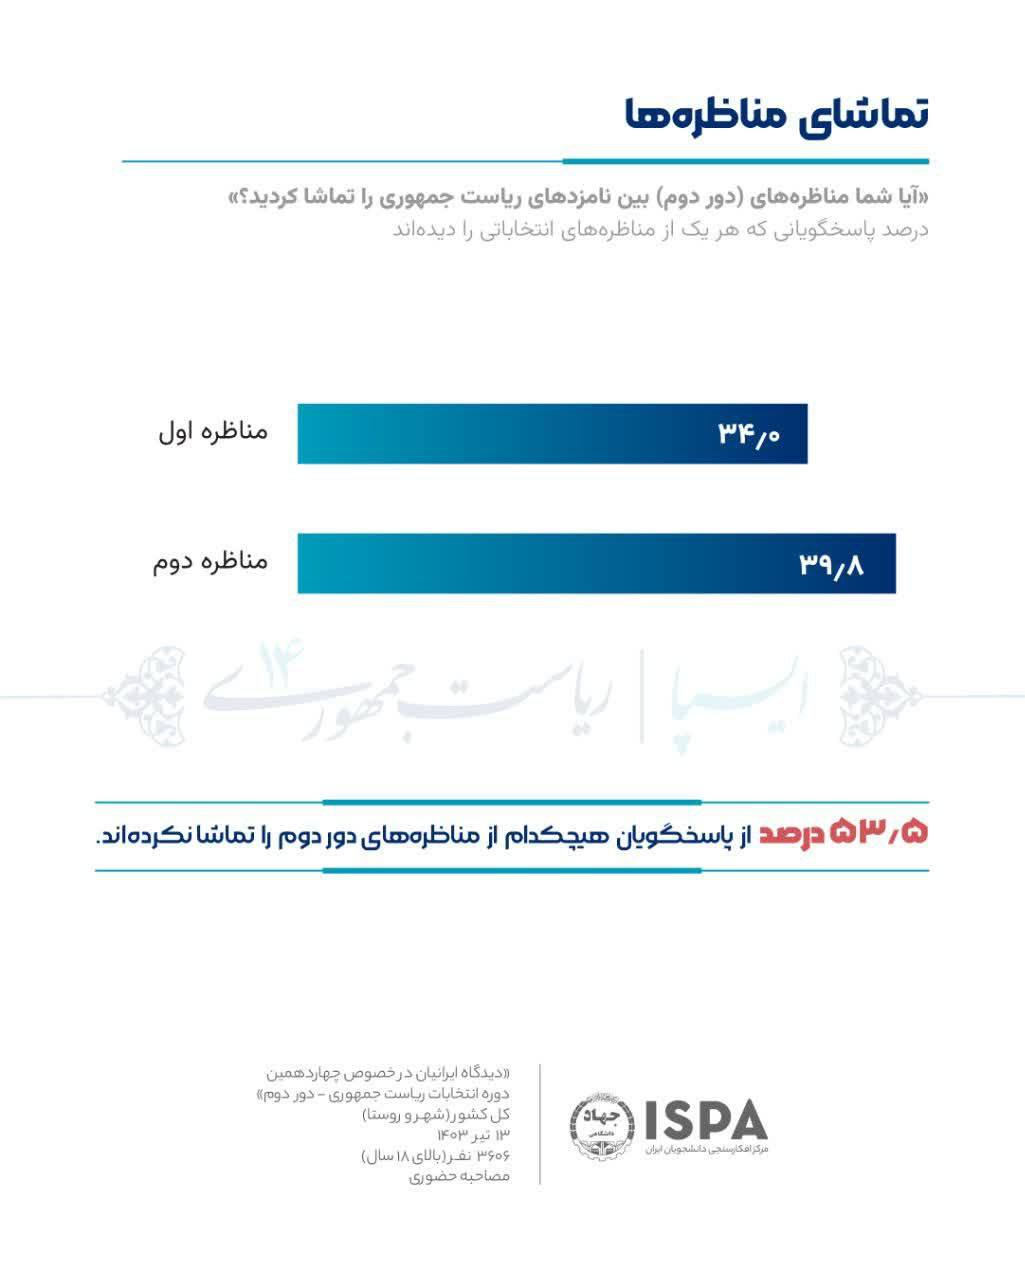 آخرین نظرسنجی ایسپا درباره میزان رأی پزشکیان و جلیلی در انتخابات 15 تیر 4